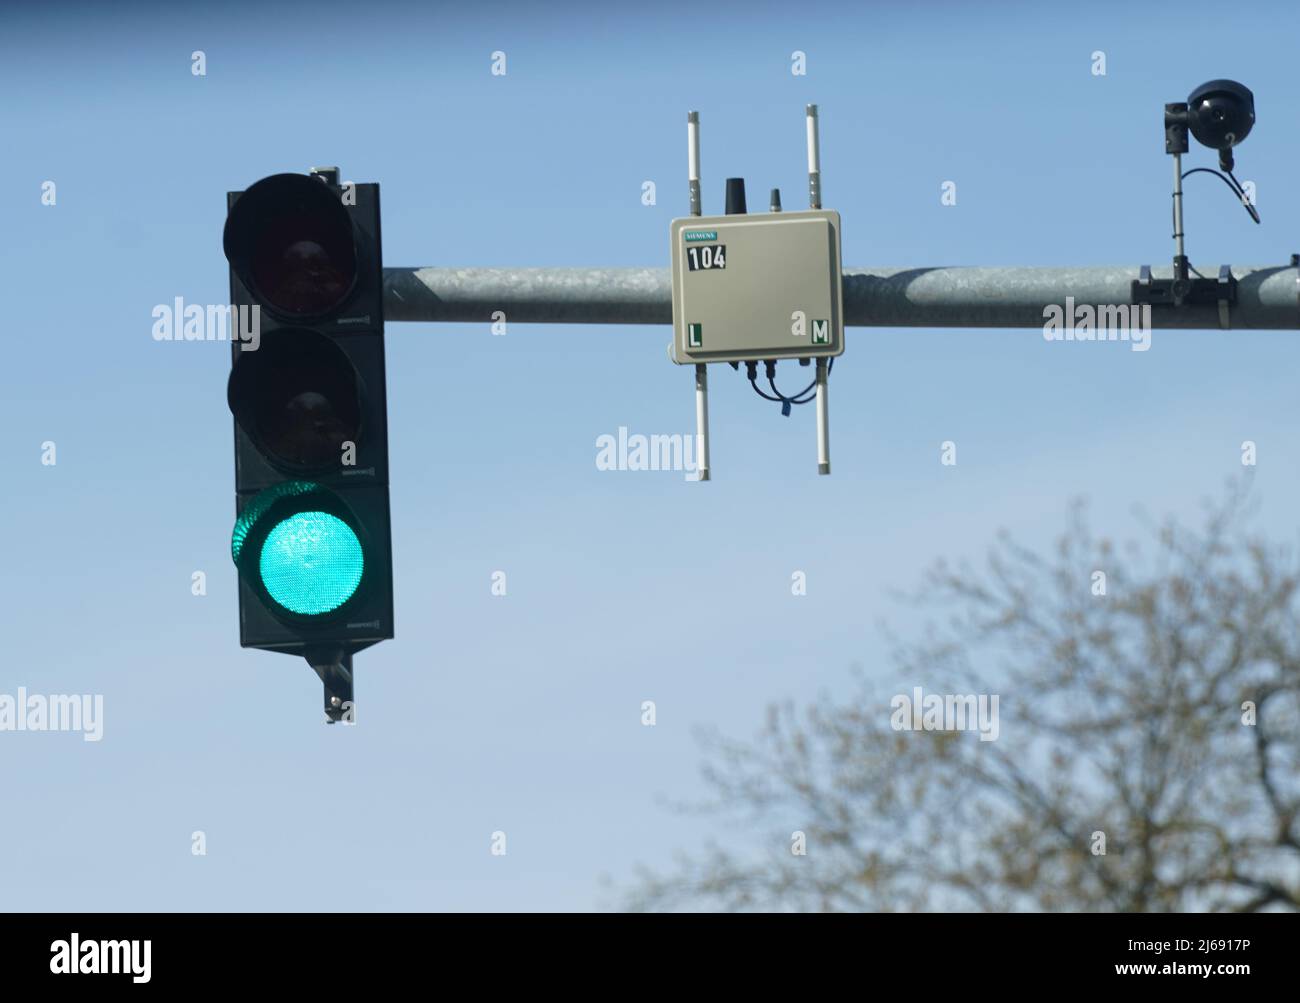 29 de abril de 2022, Hamburgo: Una unidad de transmisor de radio y cámaras  cuelgan de un poste de semáforo en la pista de prueba para la conducción  automatizada y conectada (TAVF).